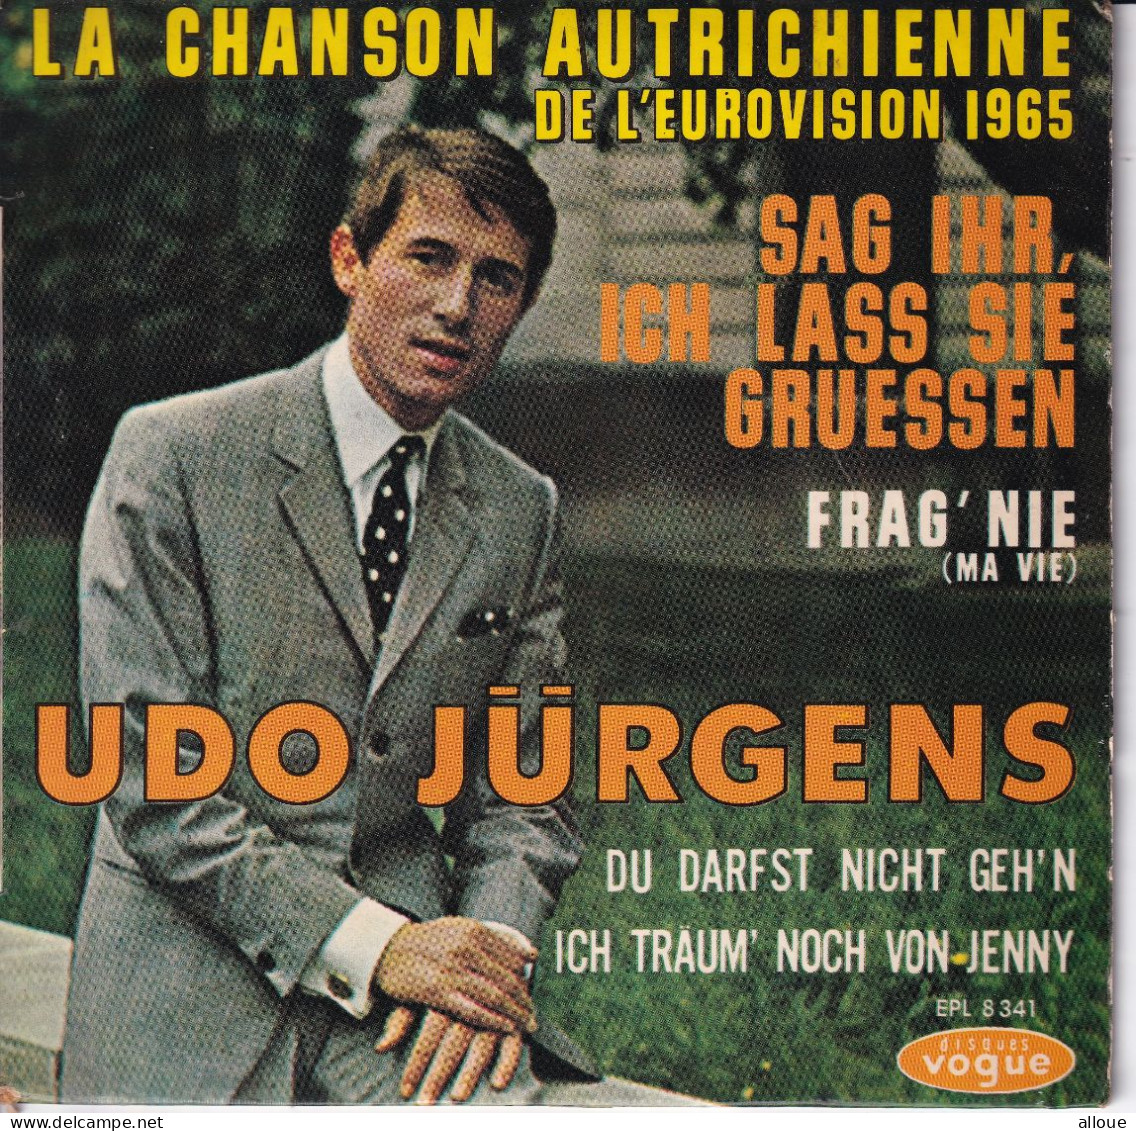 UDO JURGENS - FR EP EUROVISION 1965  - SAG IHR, ICH LASS SIE GRUESSEN + 3 - Other - German Music